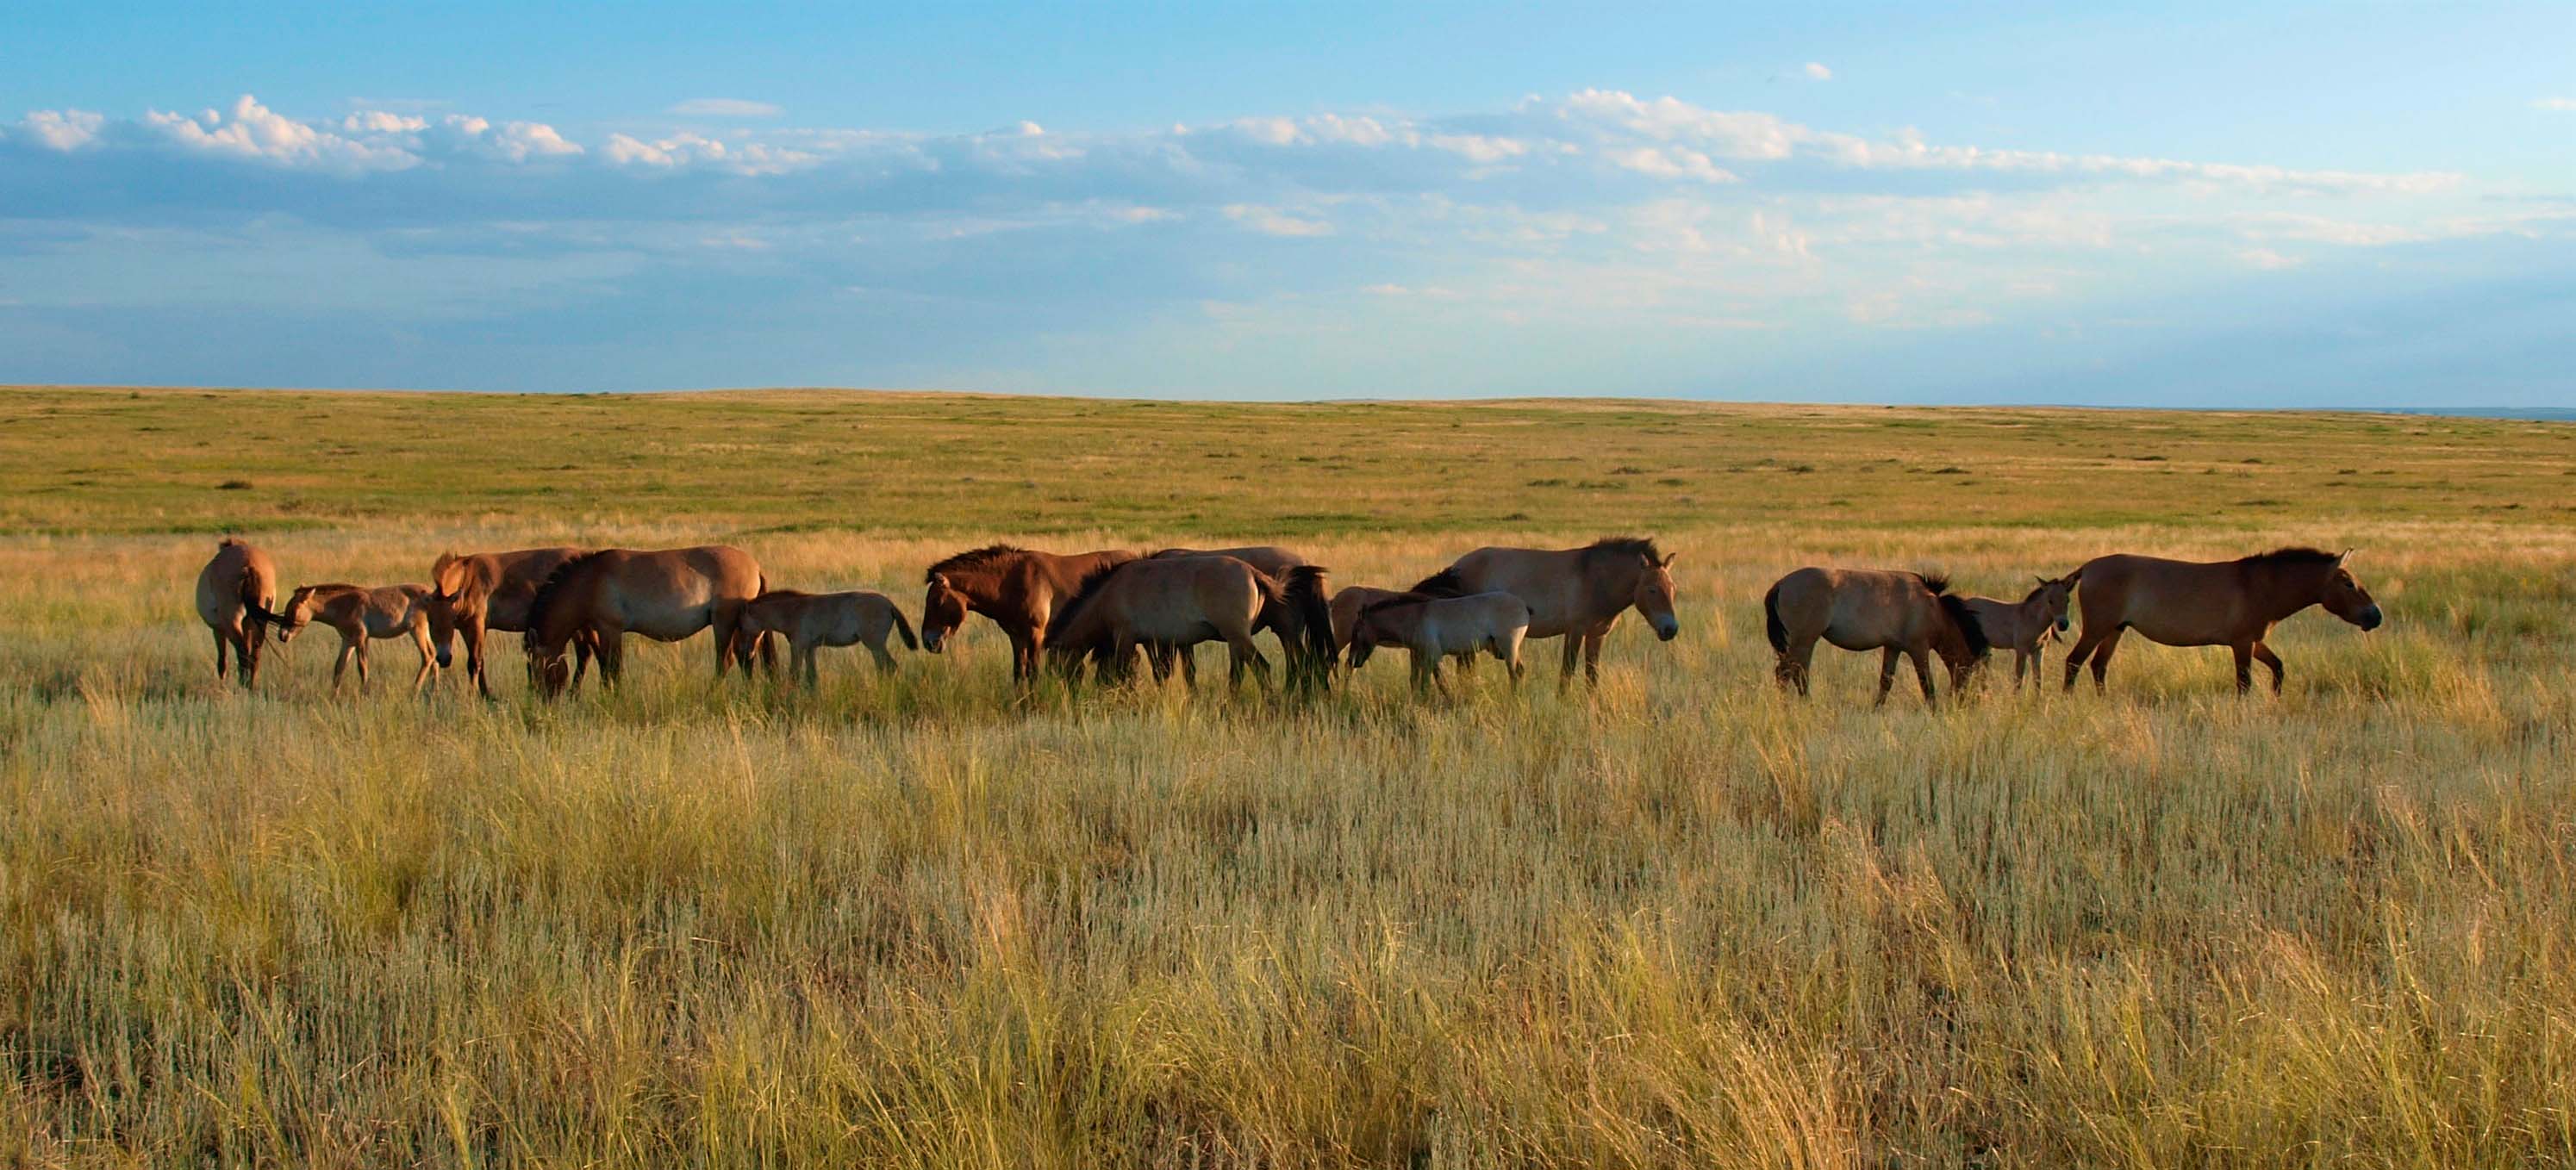 18 молодых людей в июле-сентябре помогут сохранению и изучению лошади Пржевальского в Оренбургском заповеднике - фото 2